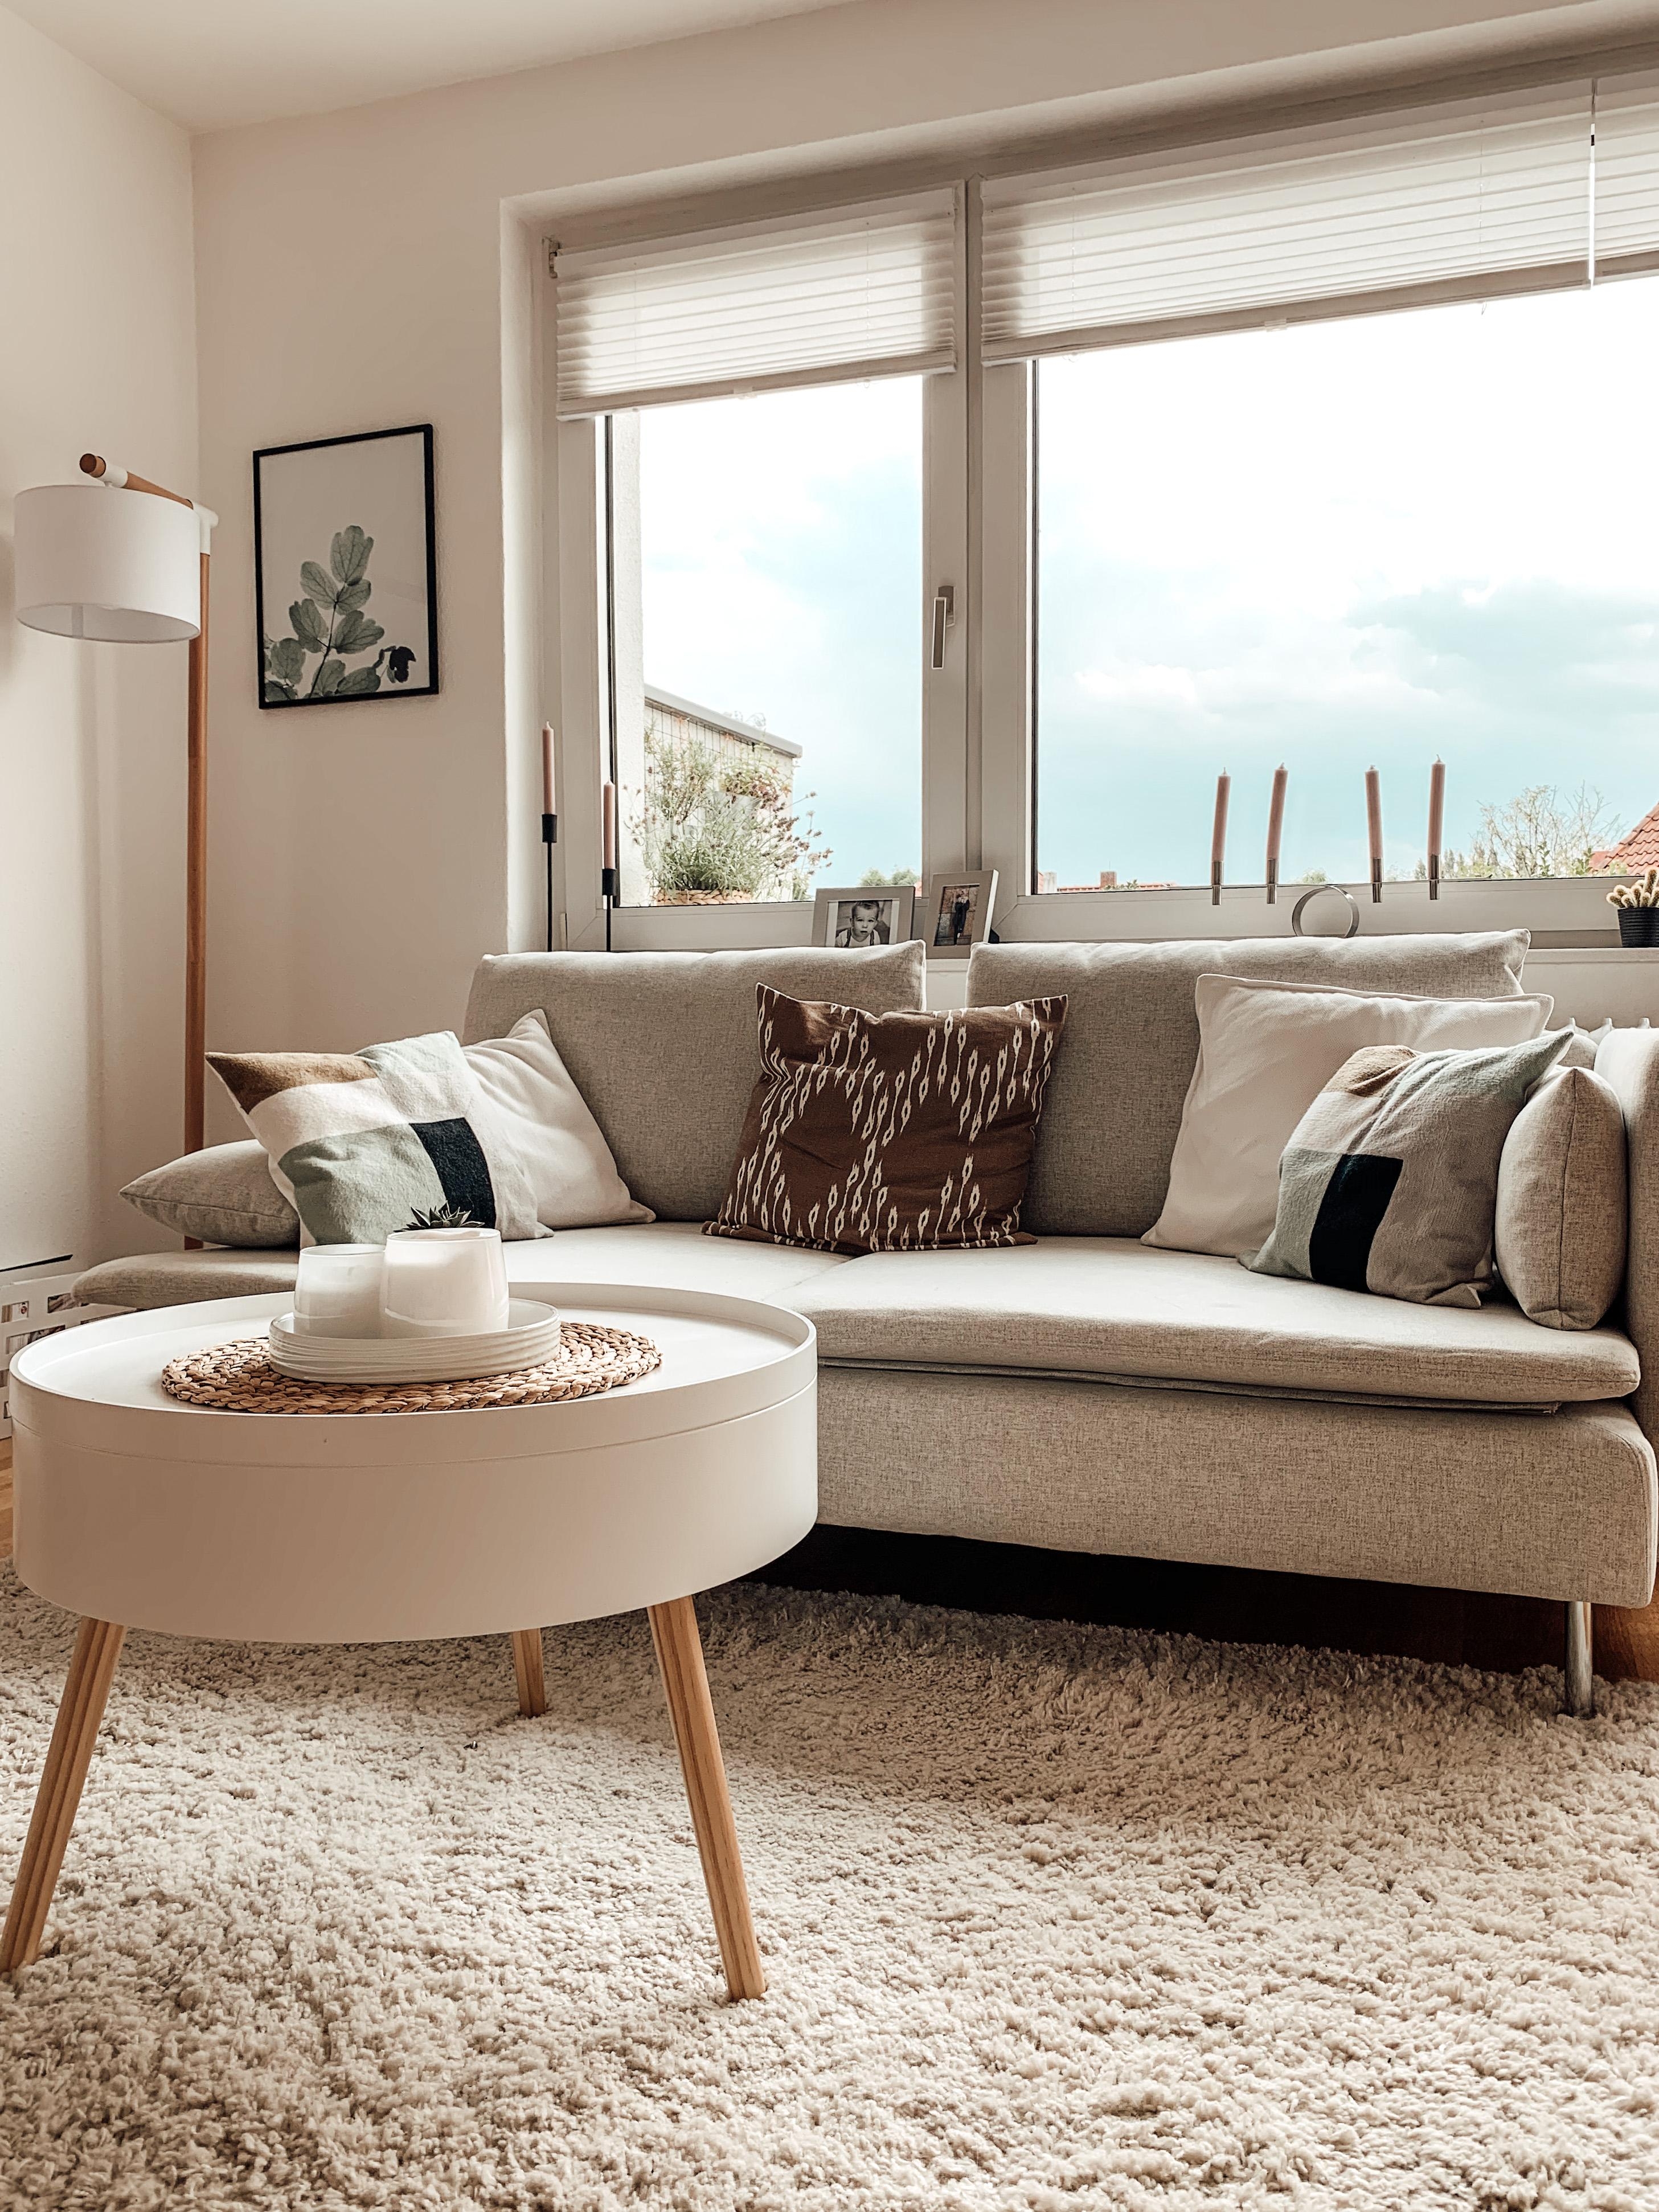 Couchstyle mit unserem neuen Sofa 😍 

#wohnzimmer #scandistyle #nordichome #wohnzimmerdetails